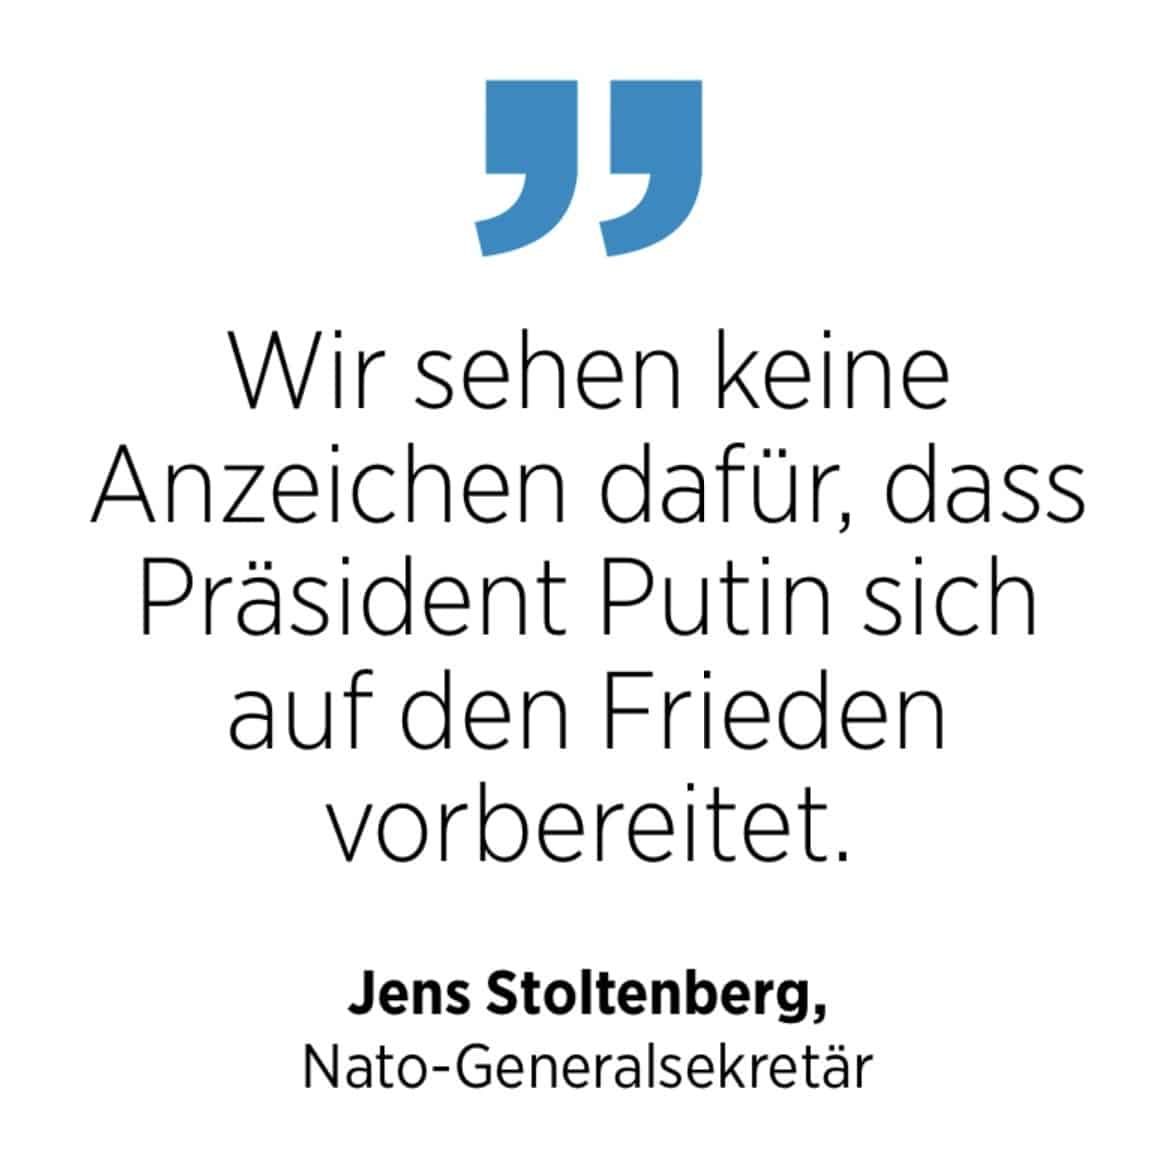 Zitat von Nato-Generalsekretär Stoltenberg. zu Putin